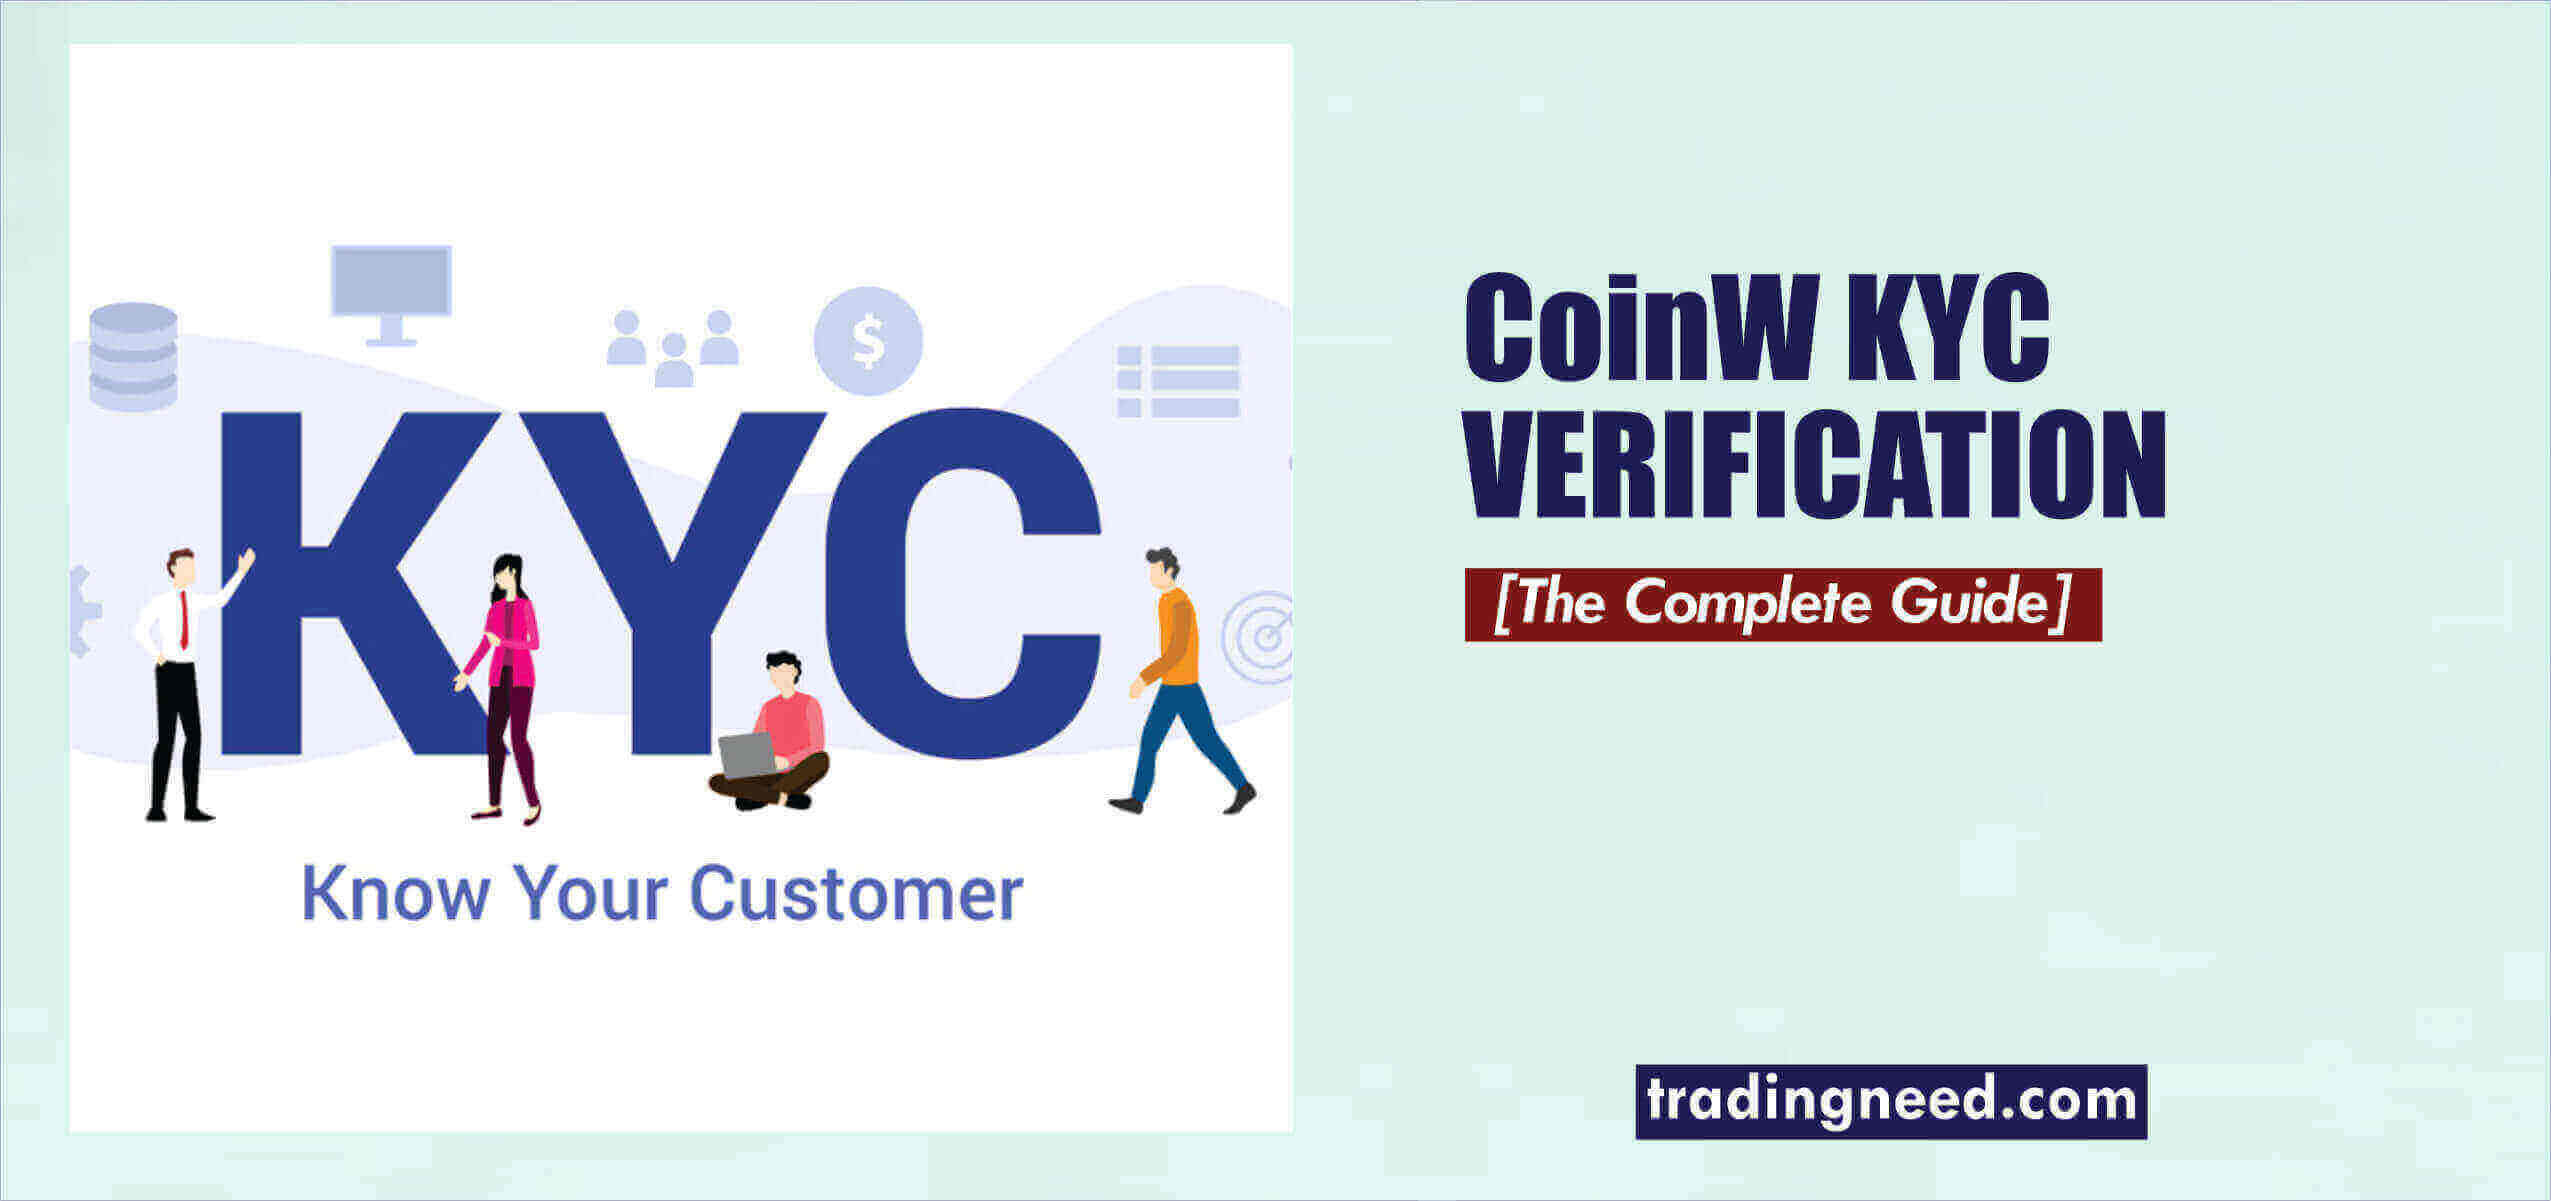 CoinW KYC verification